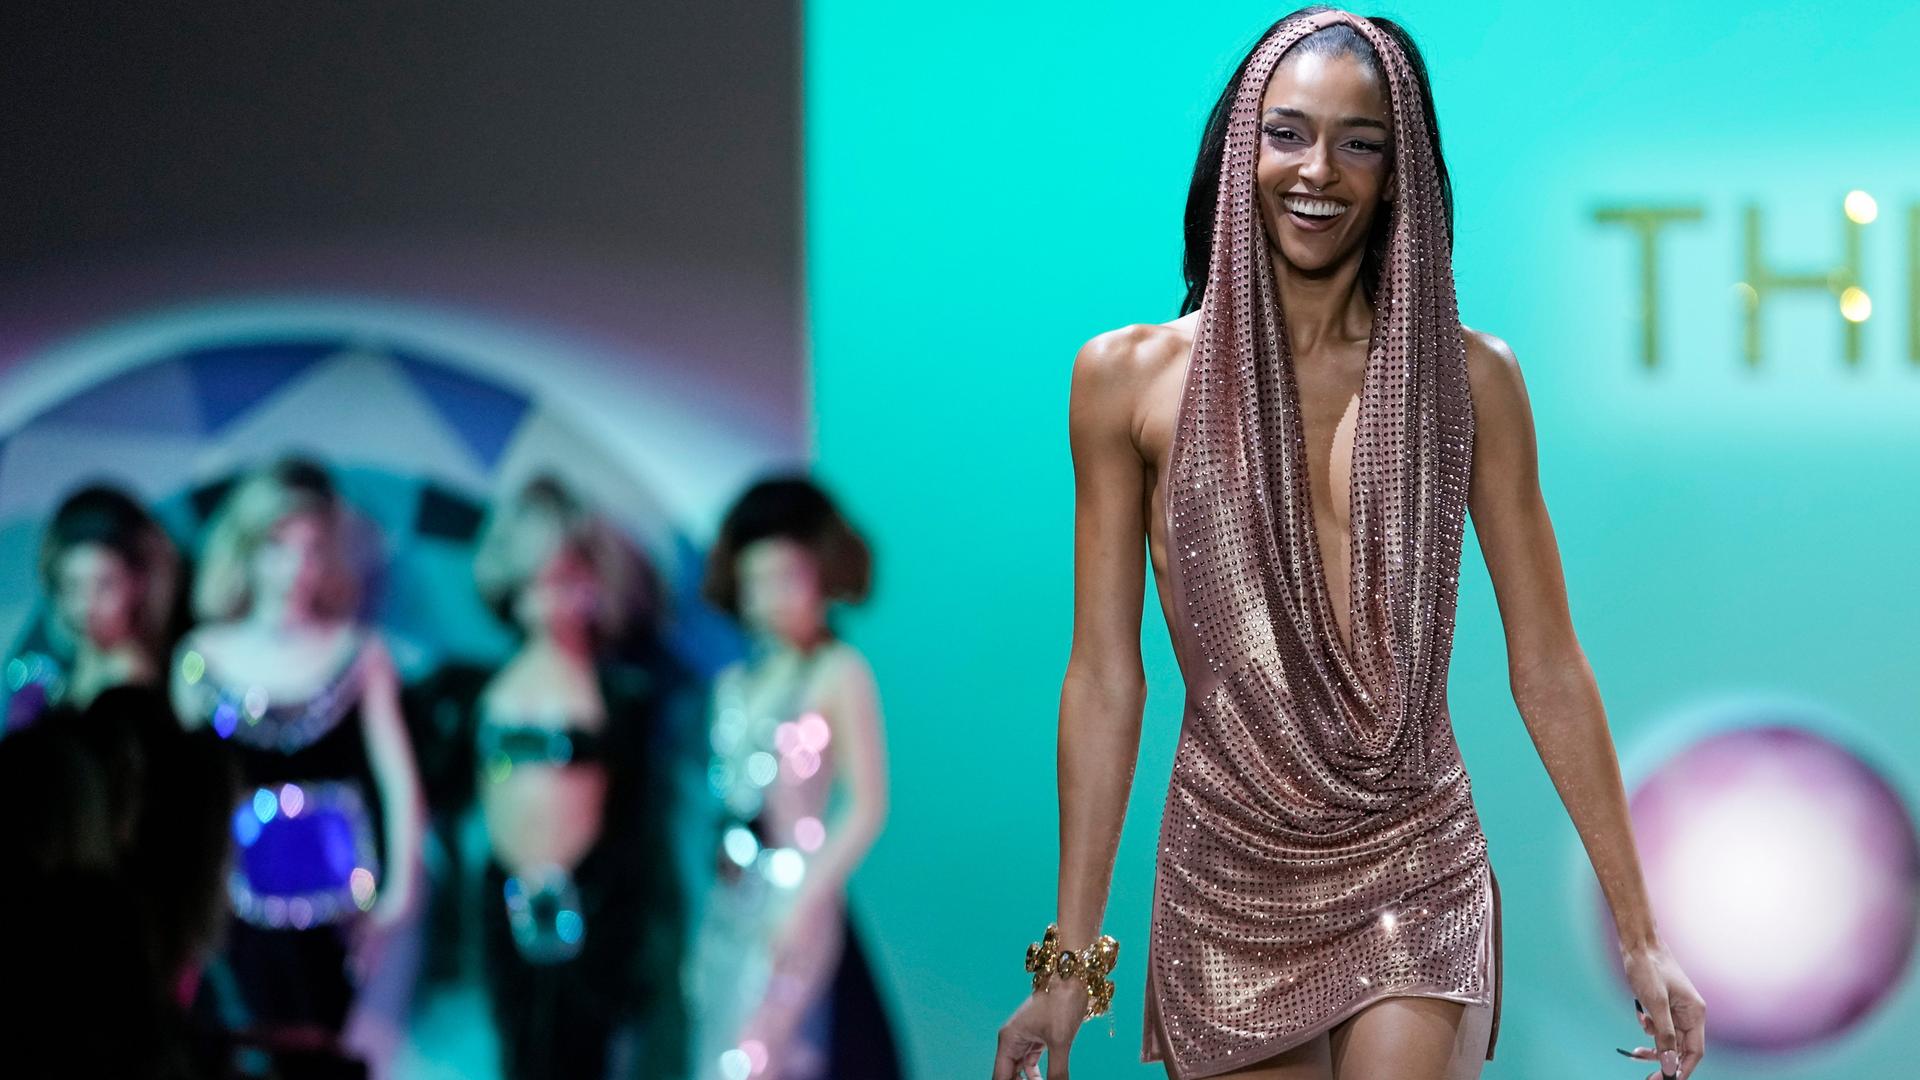 Ein weibliches Model läuft bei der Fashion Week in New York lächelnd über einen Laufsteg.